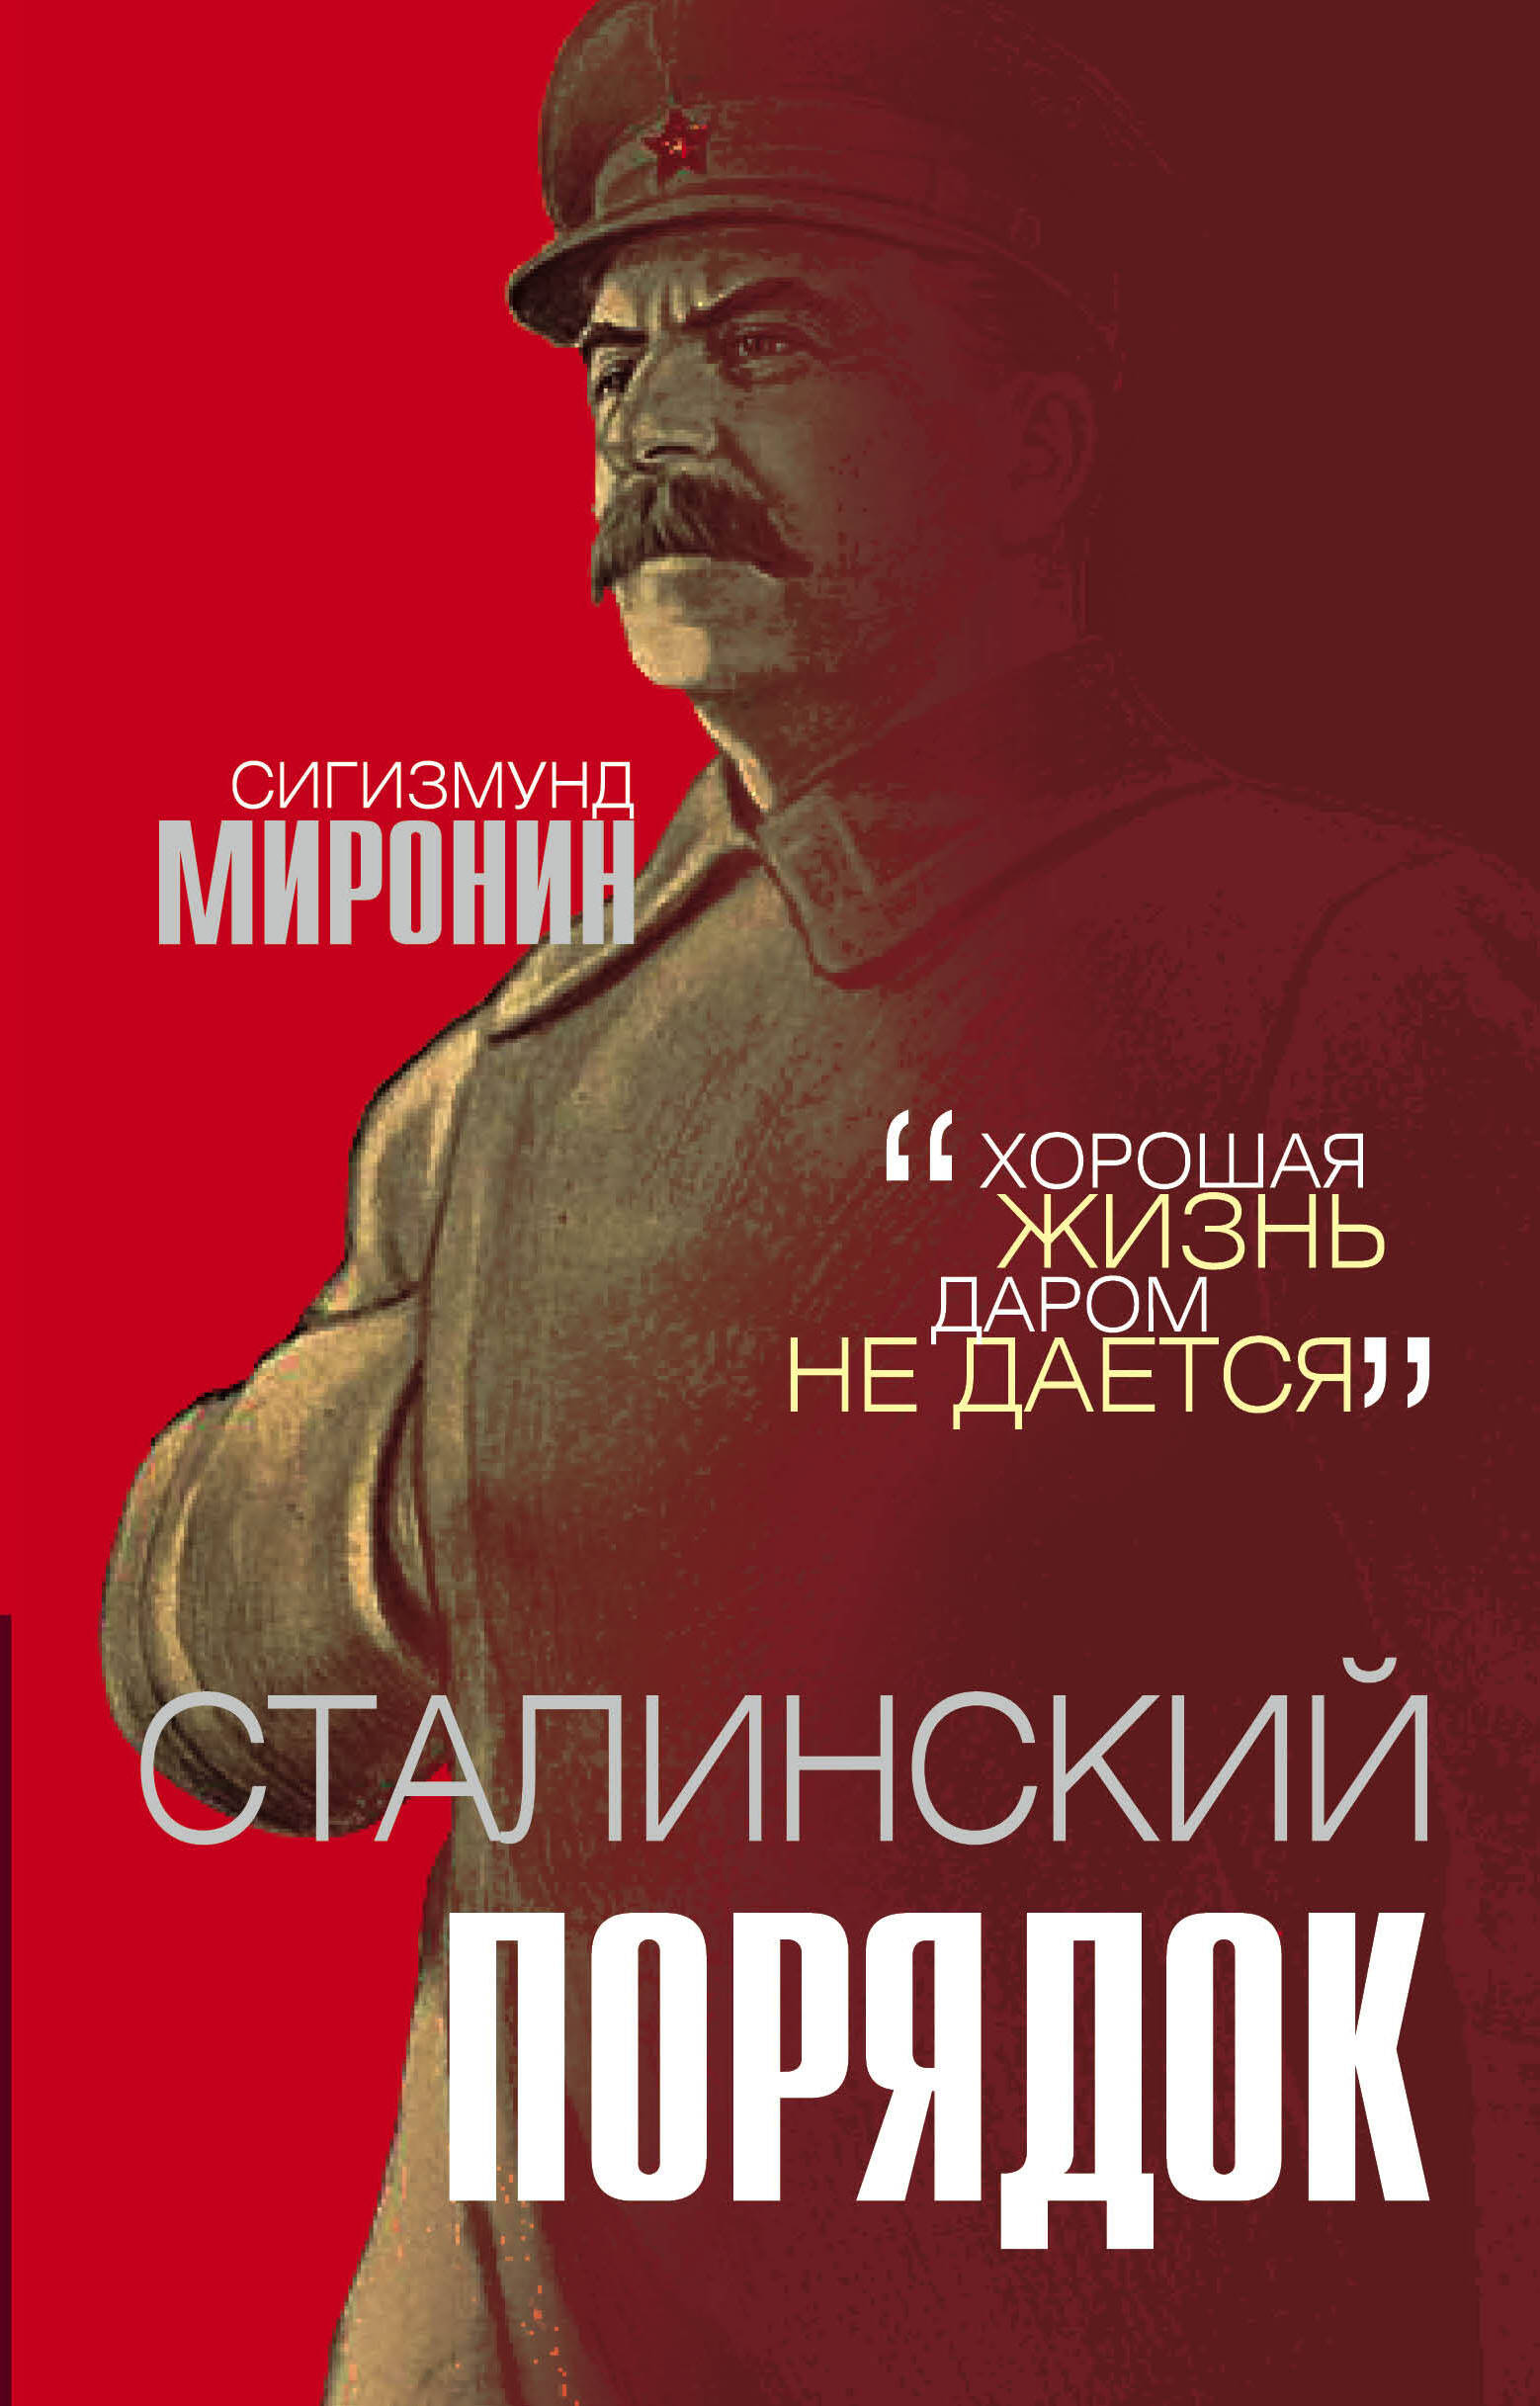 Сталинские книги купить. Сталинский порядок. Сталин книга. Сталинизм книга. Книга про Сталина.